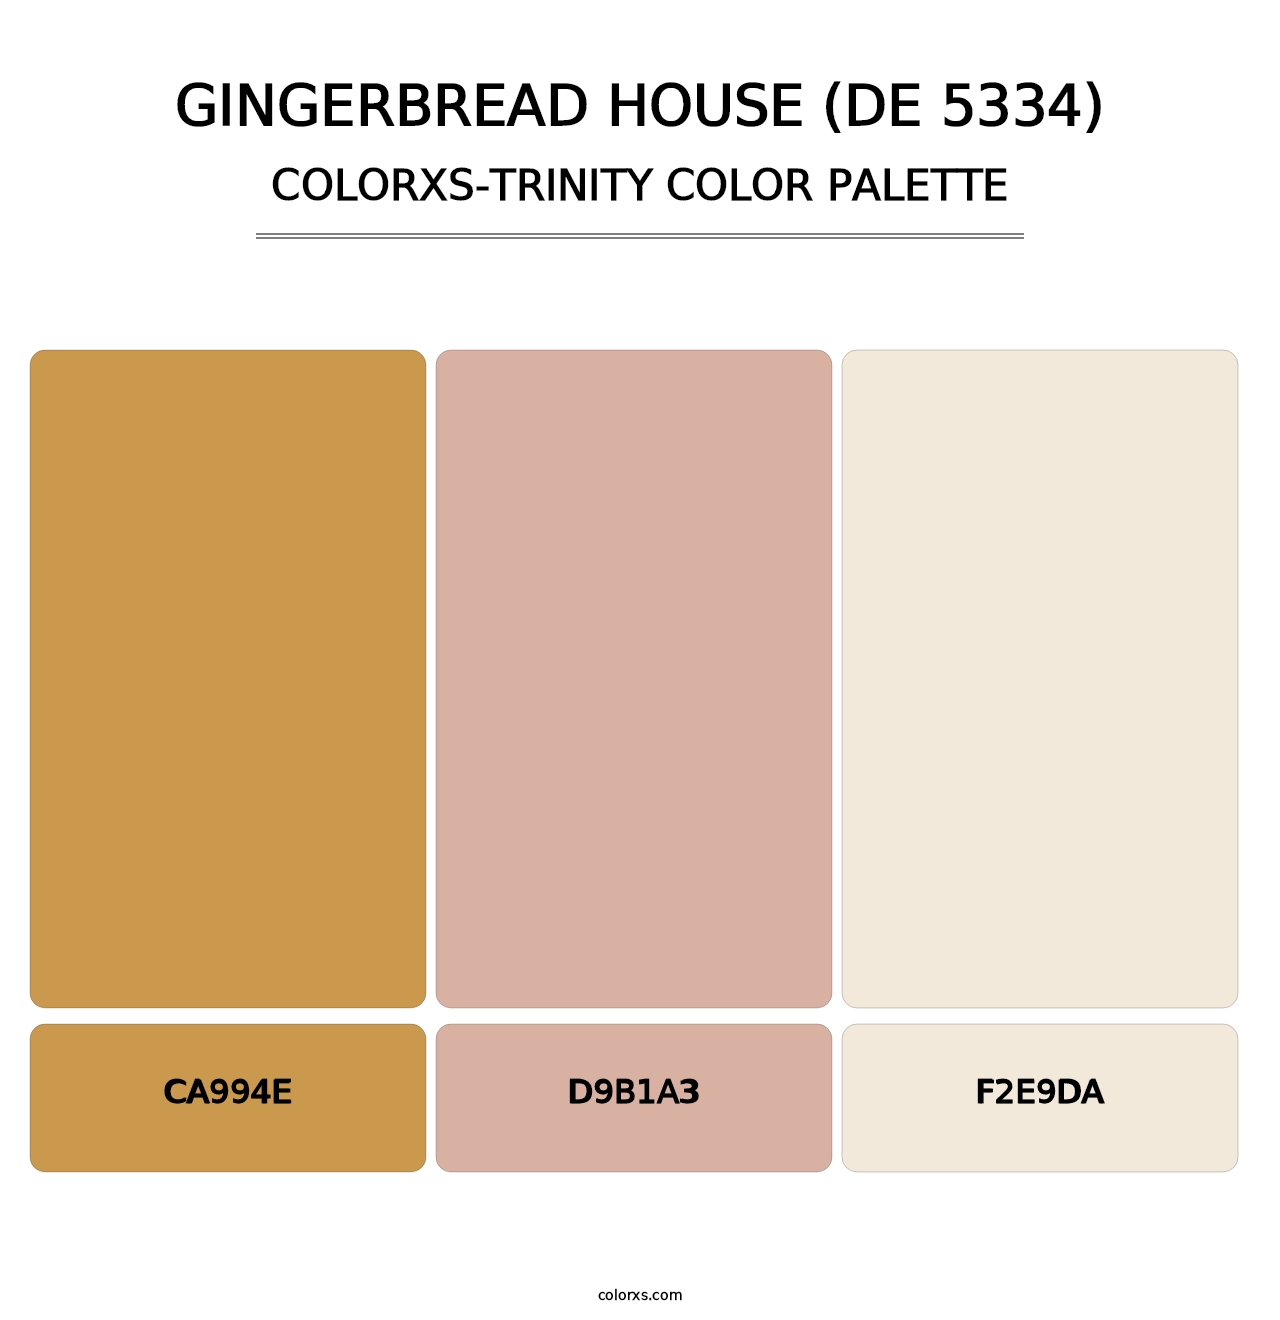 Gingerbread House (DE 5334) - Colorxs Trinity Palette